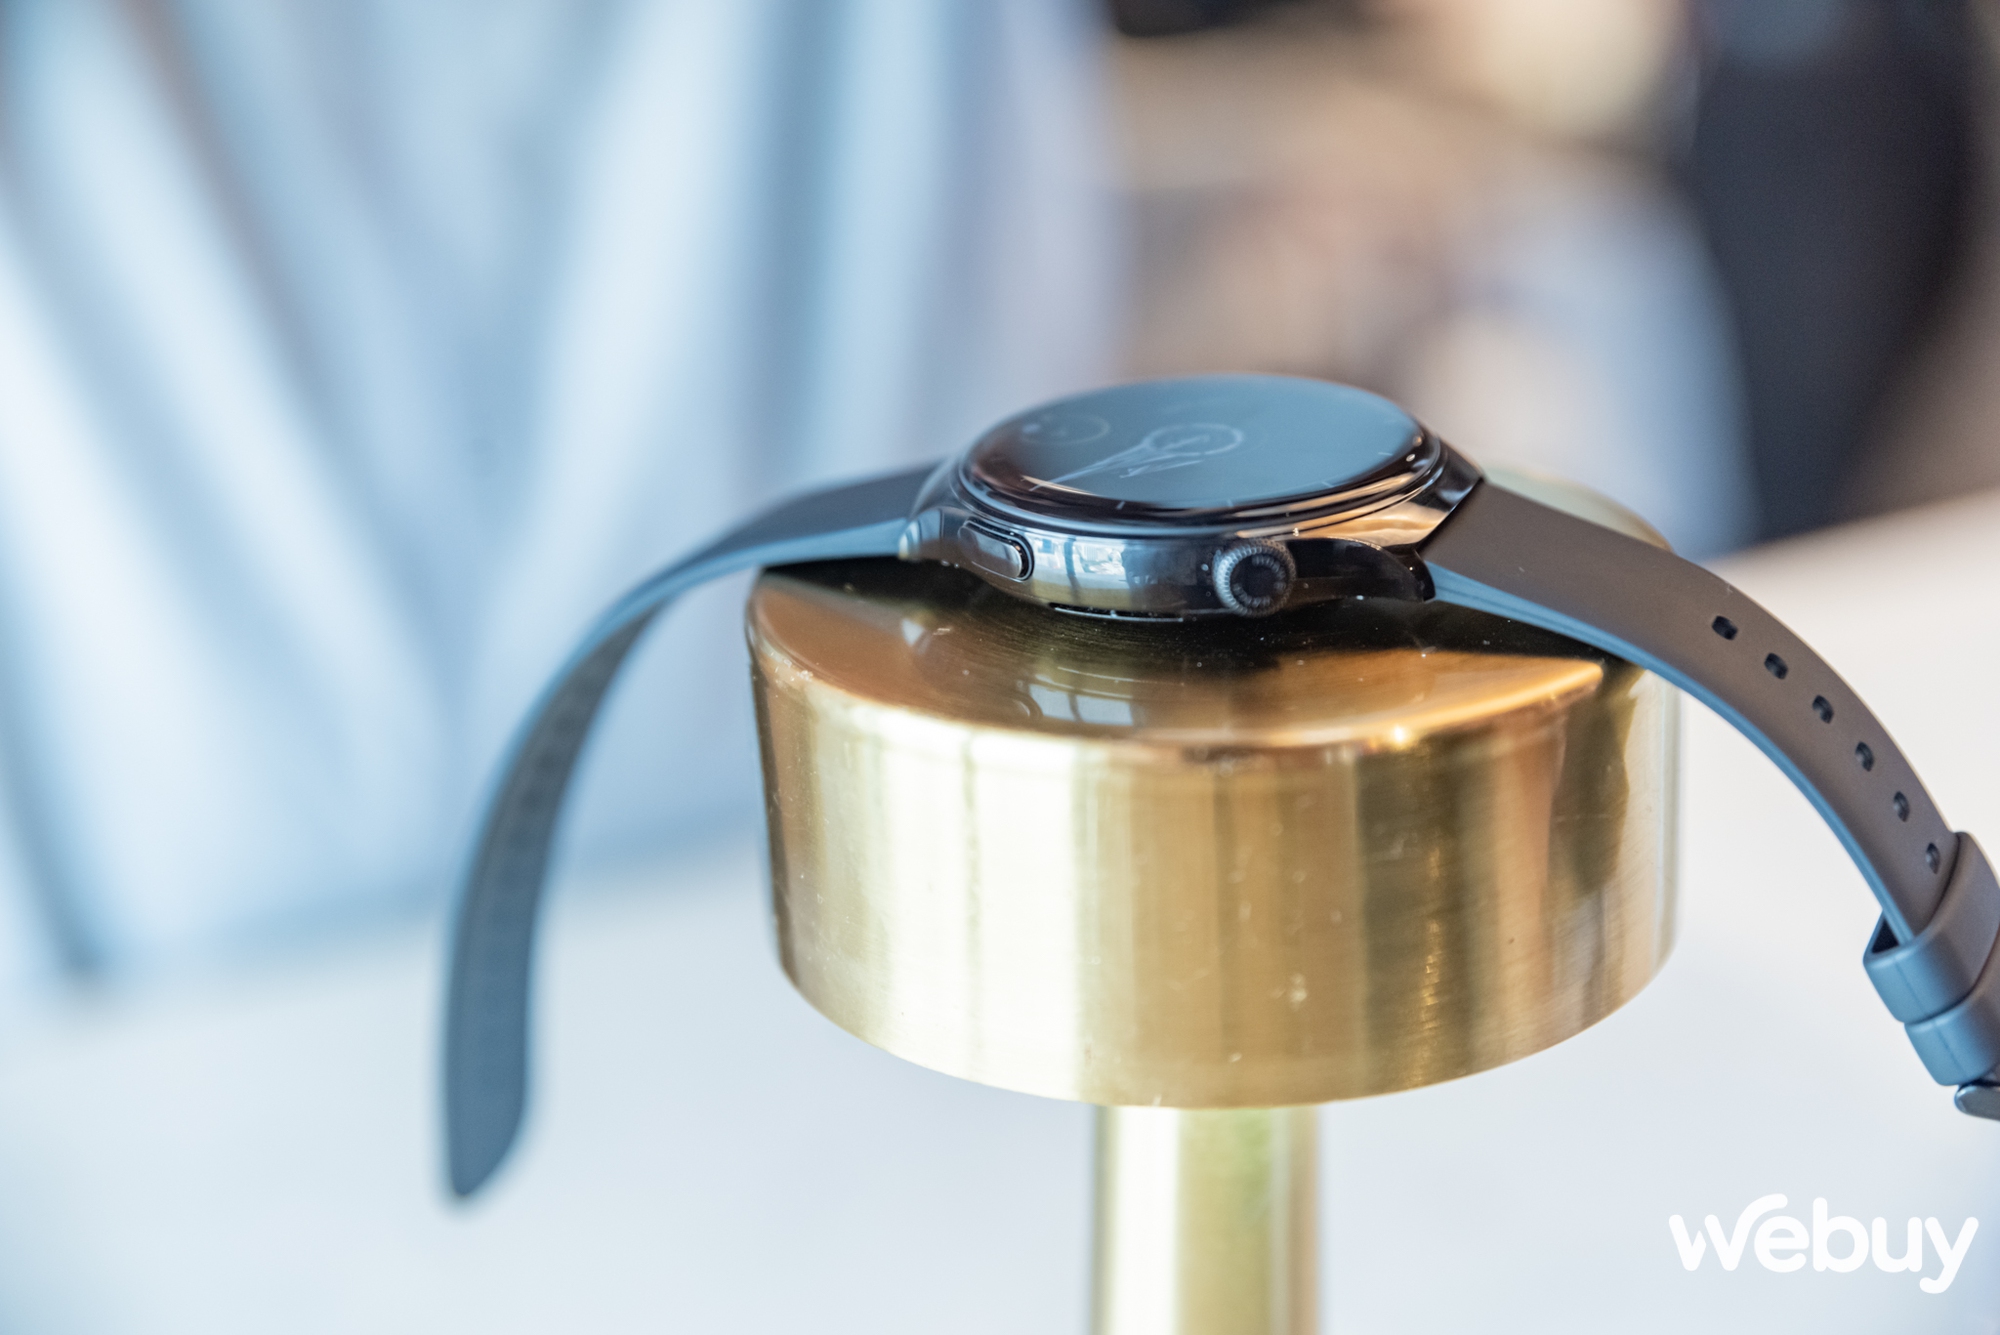 Huawei Watch 4 chính thức ra mắt: Gọn nhẹ hơn, nhiều tính năng theo dõi sức khỏe và tập luyện, tích hợp eSim, giá xấp xỉ 12 triệu đồng - Ảnh 3.